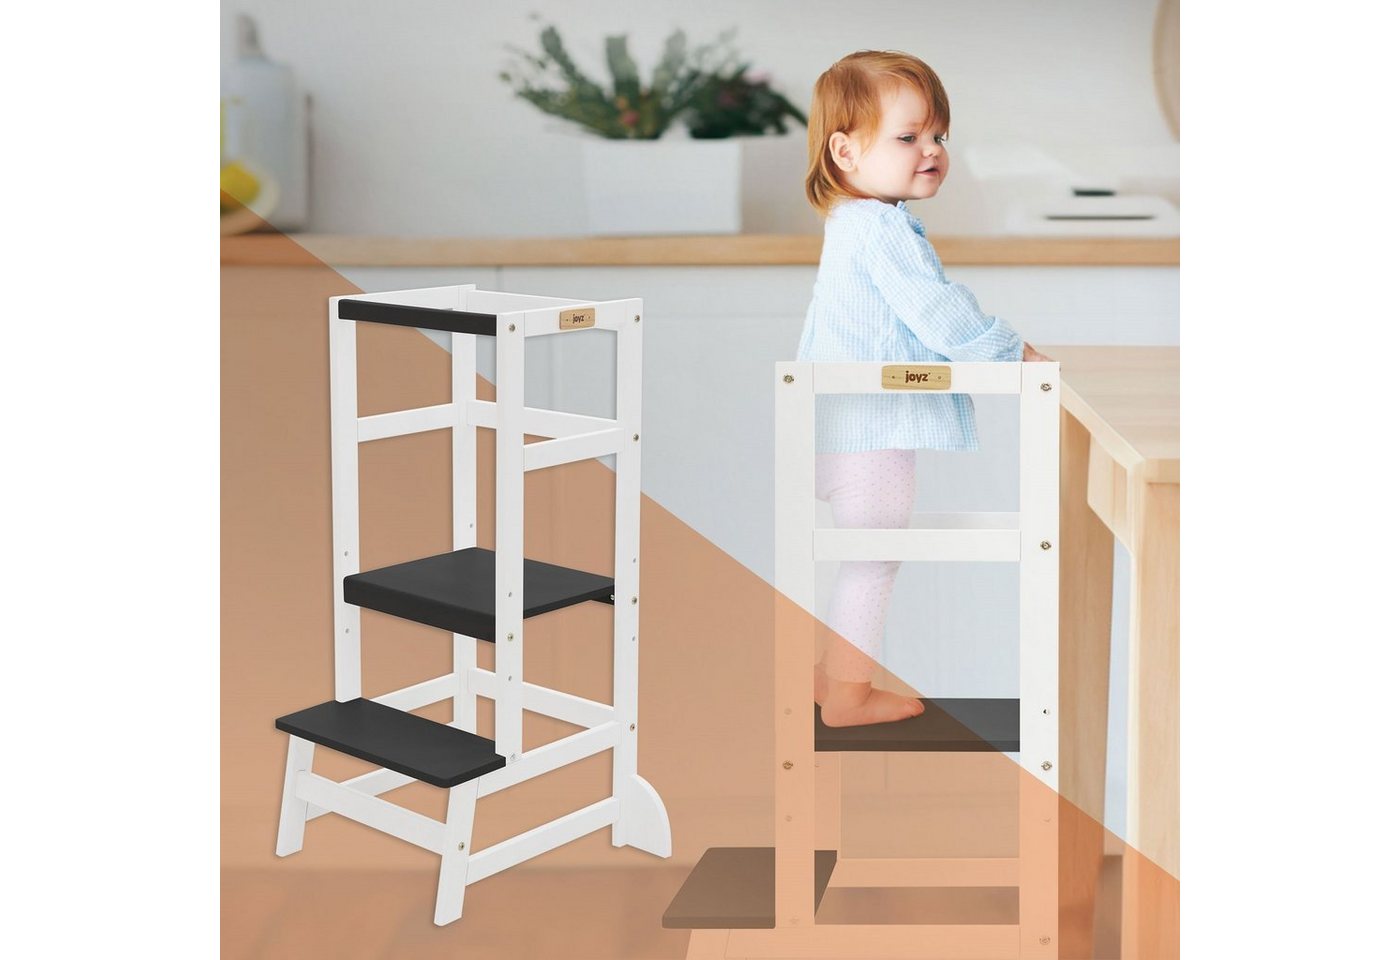 Joyz Kinderstuhl Montessori Lerntower für Kinder aus Holz Verwandelbar Kinderstuhl, Küchenhelfer Weiß/Anthrazit mit Schutzstab und 2 Stufen 54x44x90cm von Joyz